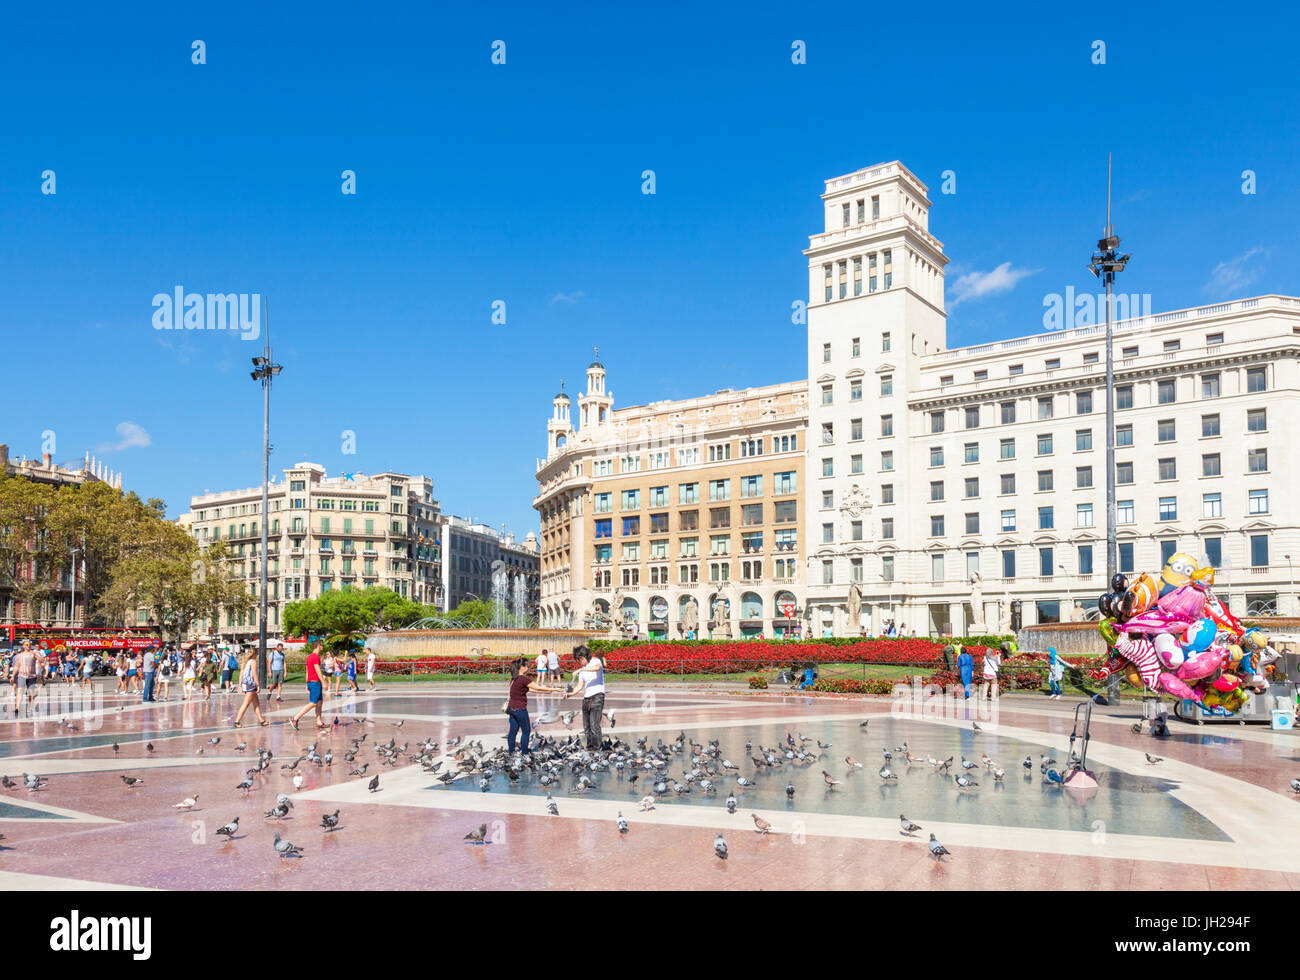 La Plaça de Catalunya, una gran plaza pública en el centro de la ciudad de Barcelona, Cataluña (Catalunya), España, Europa Foto de stock